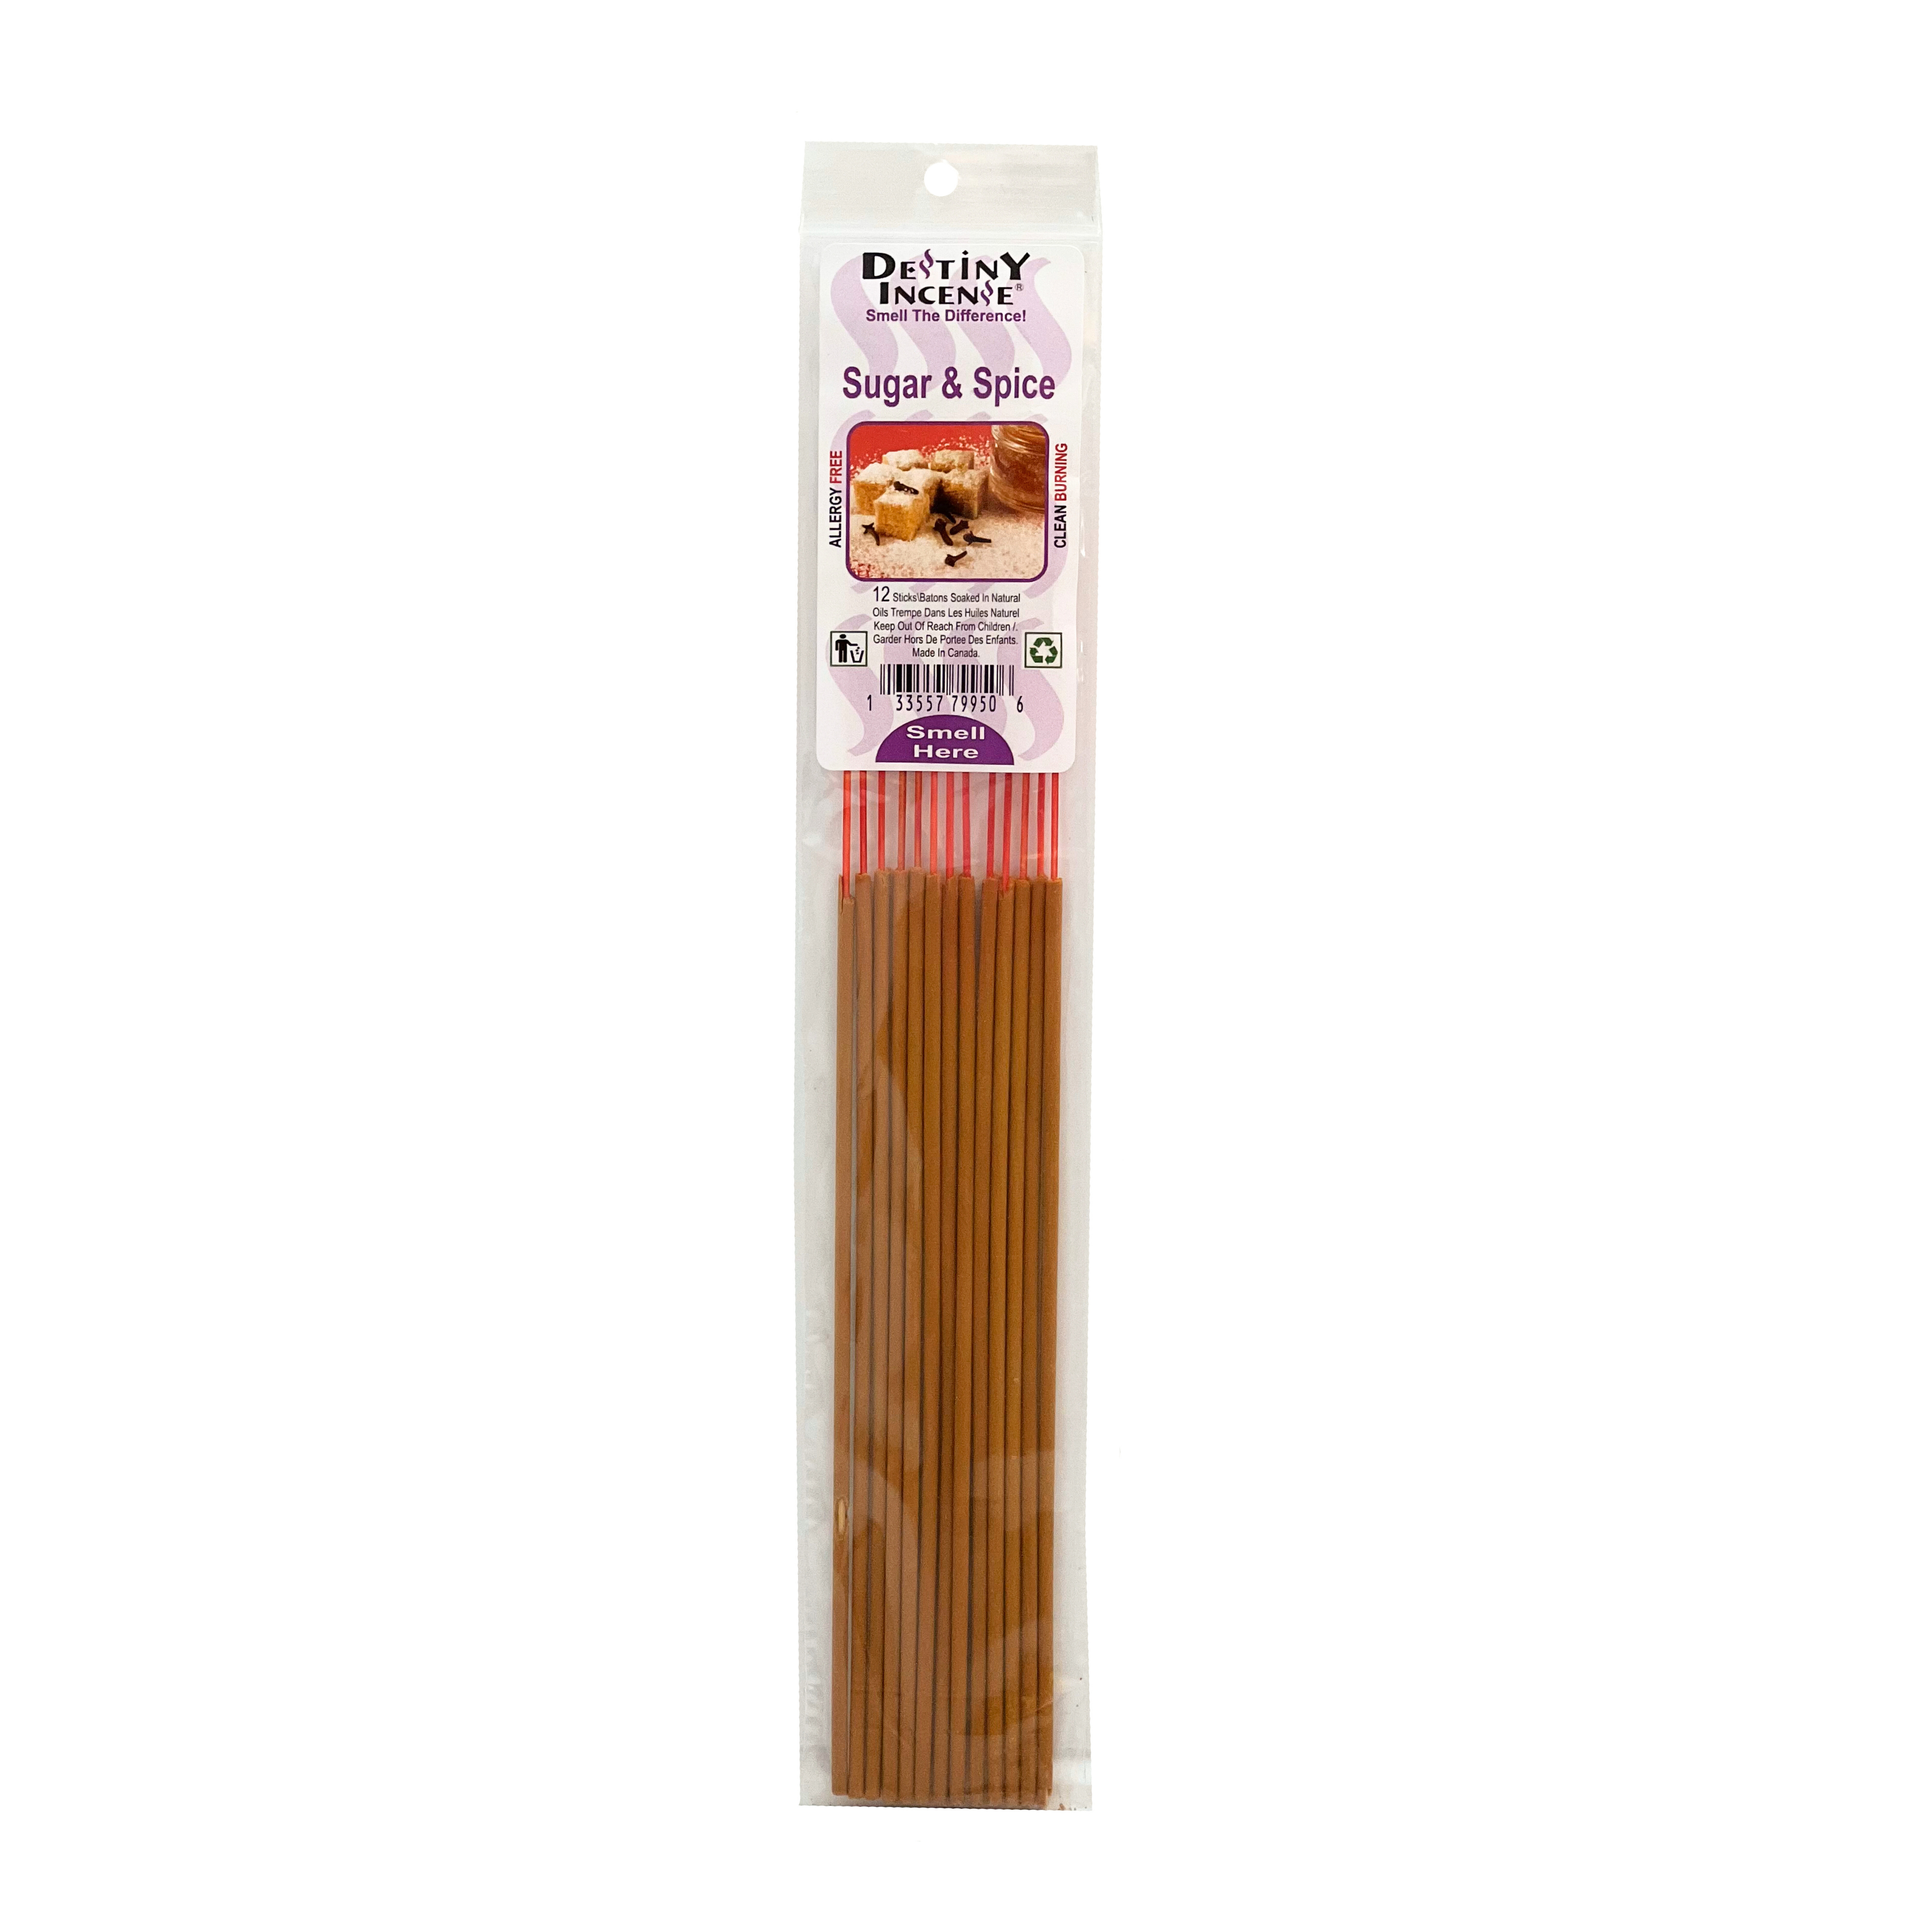 Destiny incense sugar & spice 12 Sticks